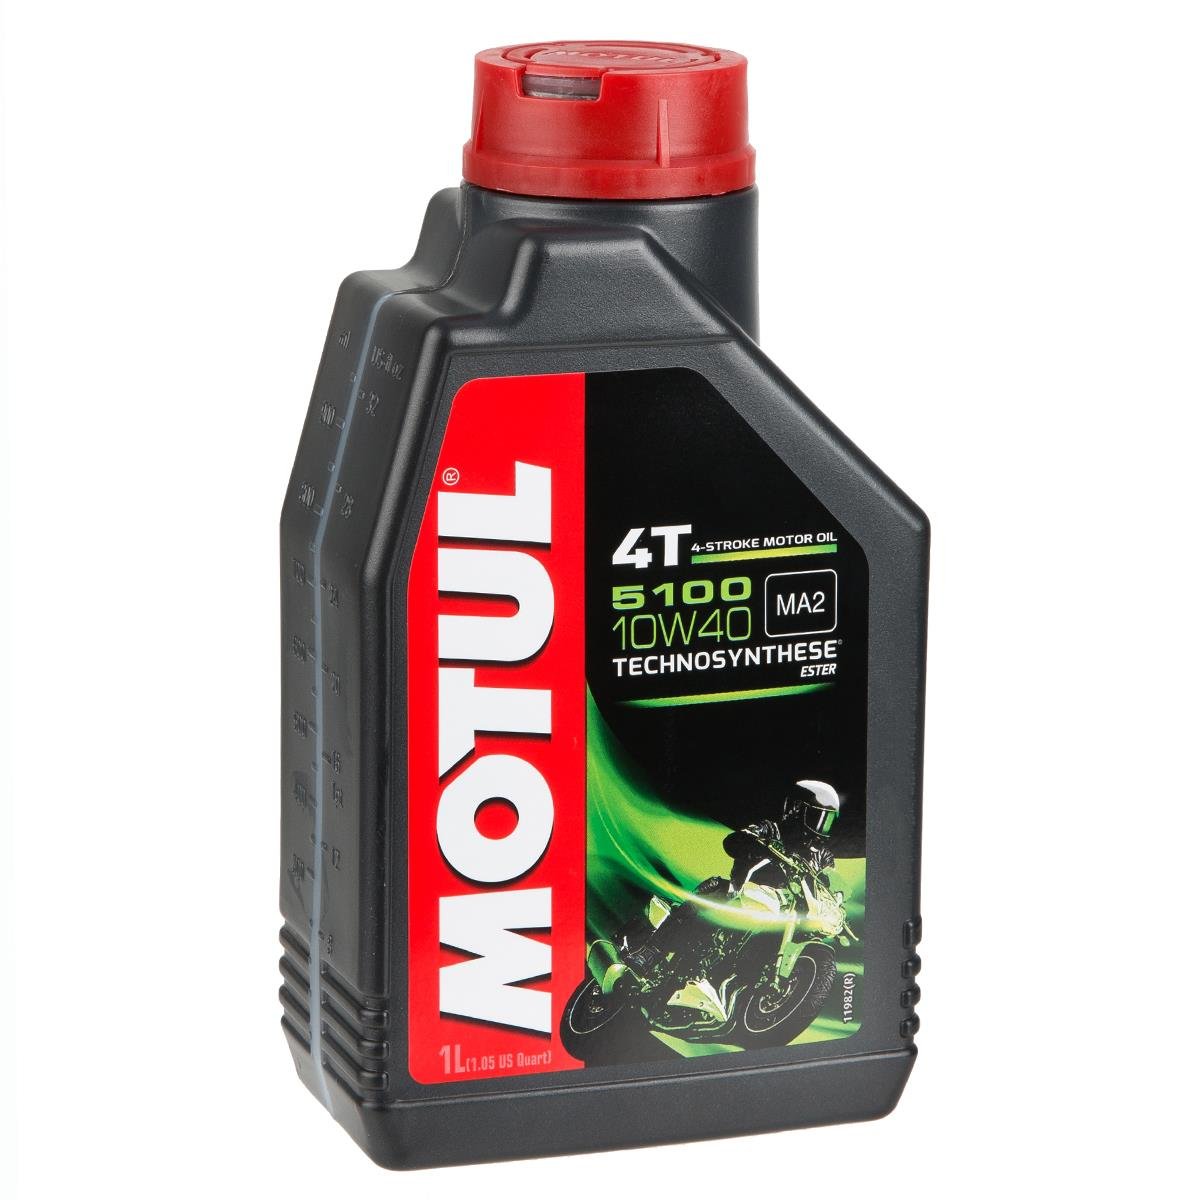 motul-huile-moteur-5100-4t-sae-10w40-1-litre-maciag-offroad